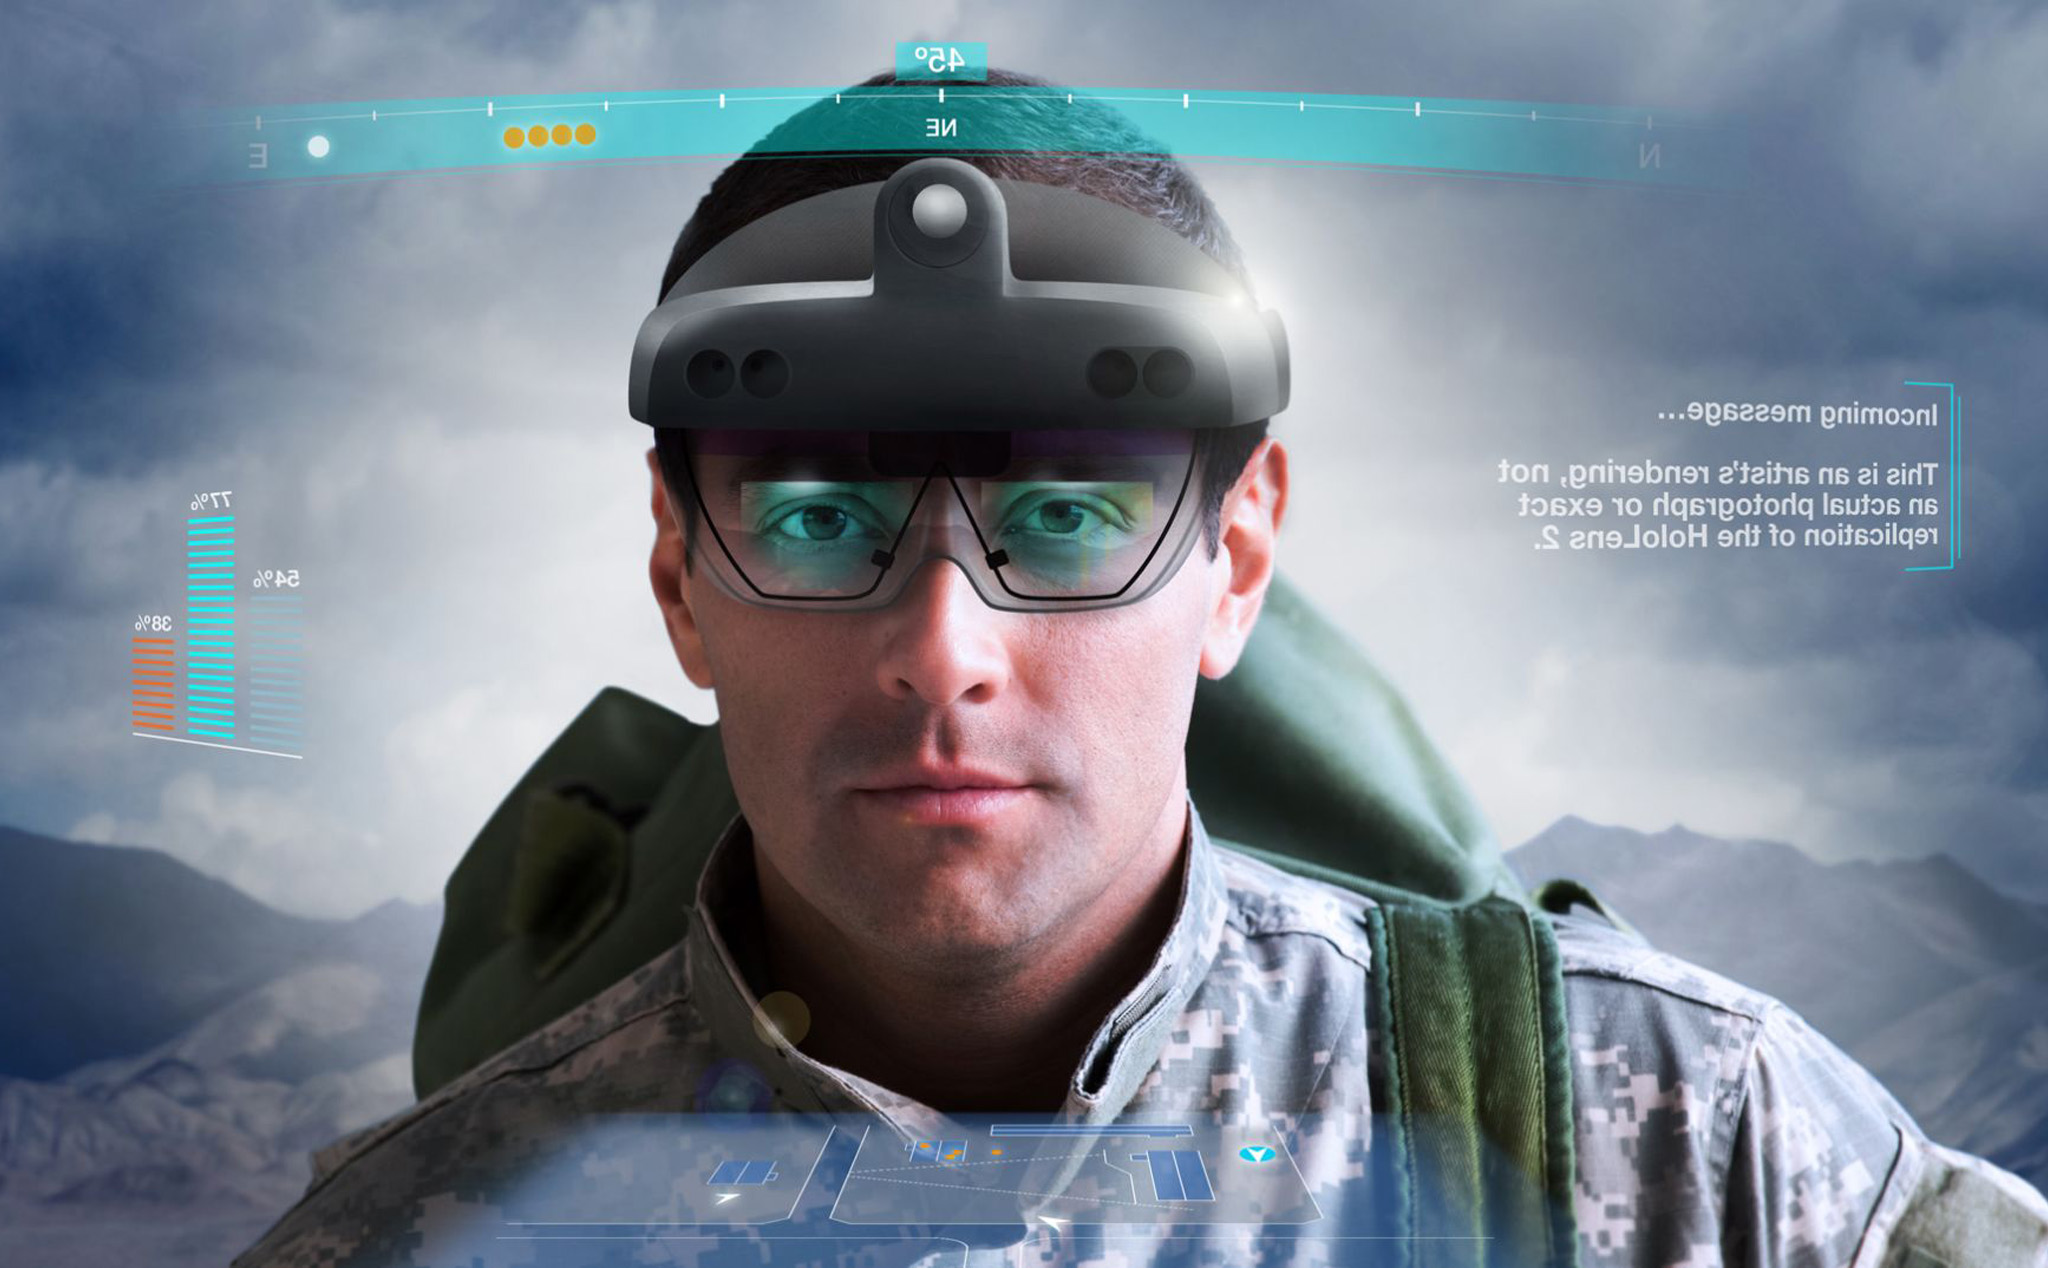 Quân đội Mỹ bỏ gần nửa tỷ Đô mua kính Microsoft HoloLens 2 để làm gì?